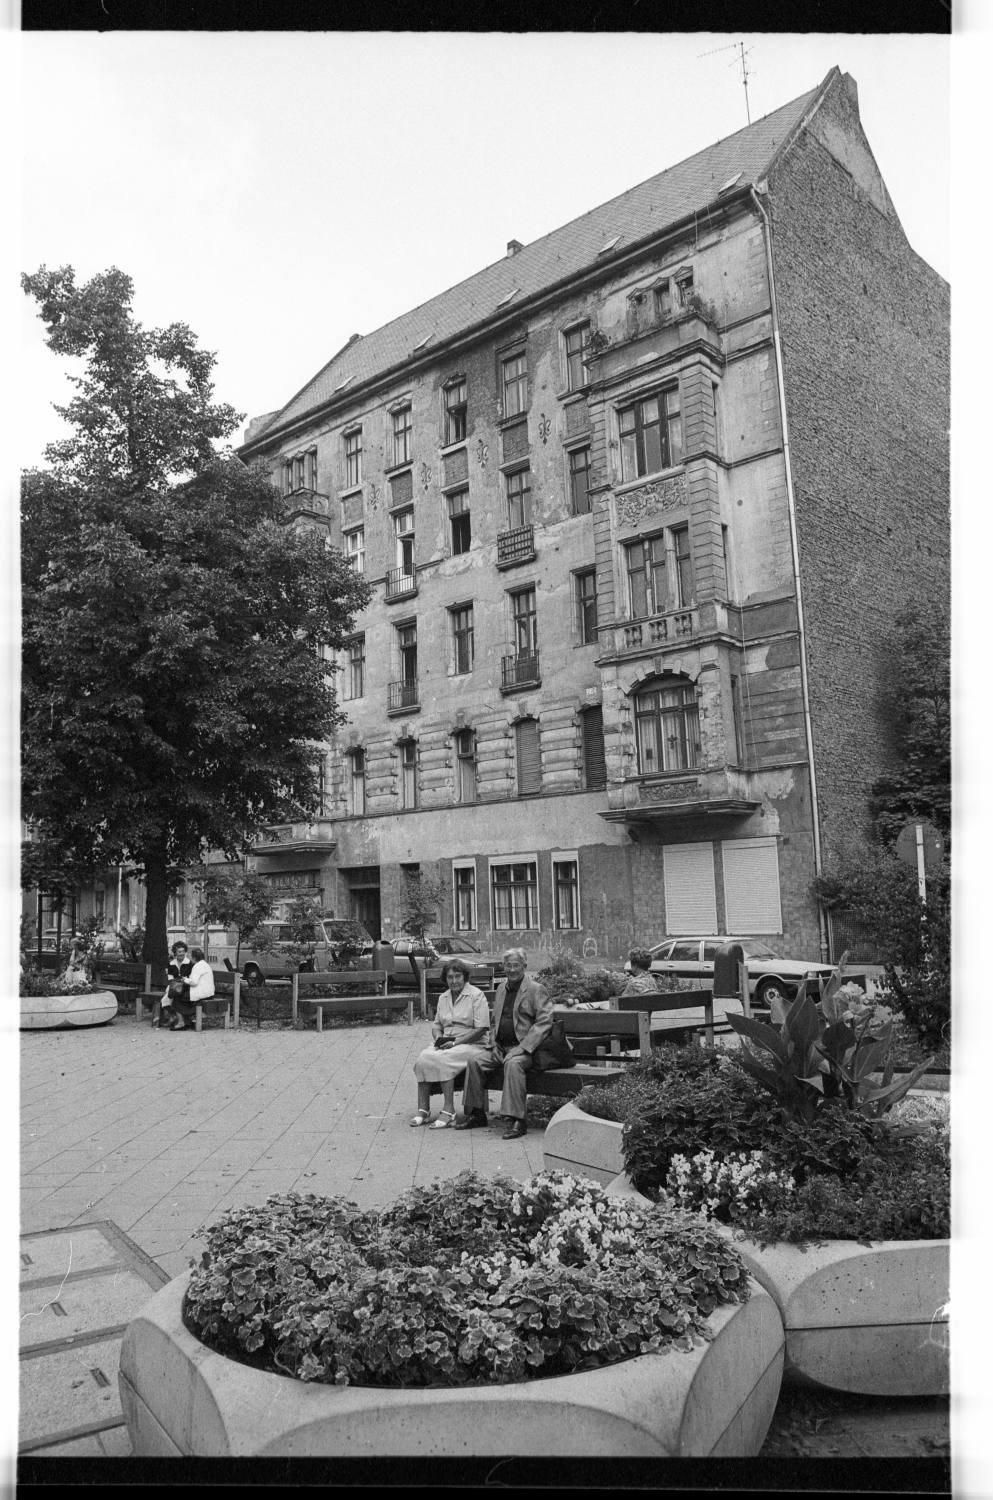 Kleinbildnegative: Mietshäuser, Hohenstaufenstr. 2 und 3, 1982 (Museen Tempelhof-Schöneberg/Jürgen Henschel RR-F)